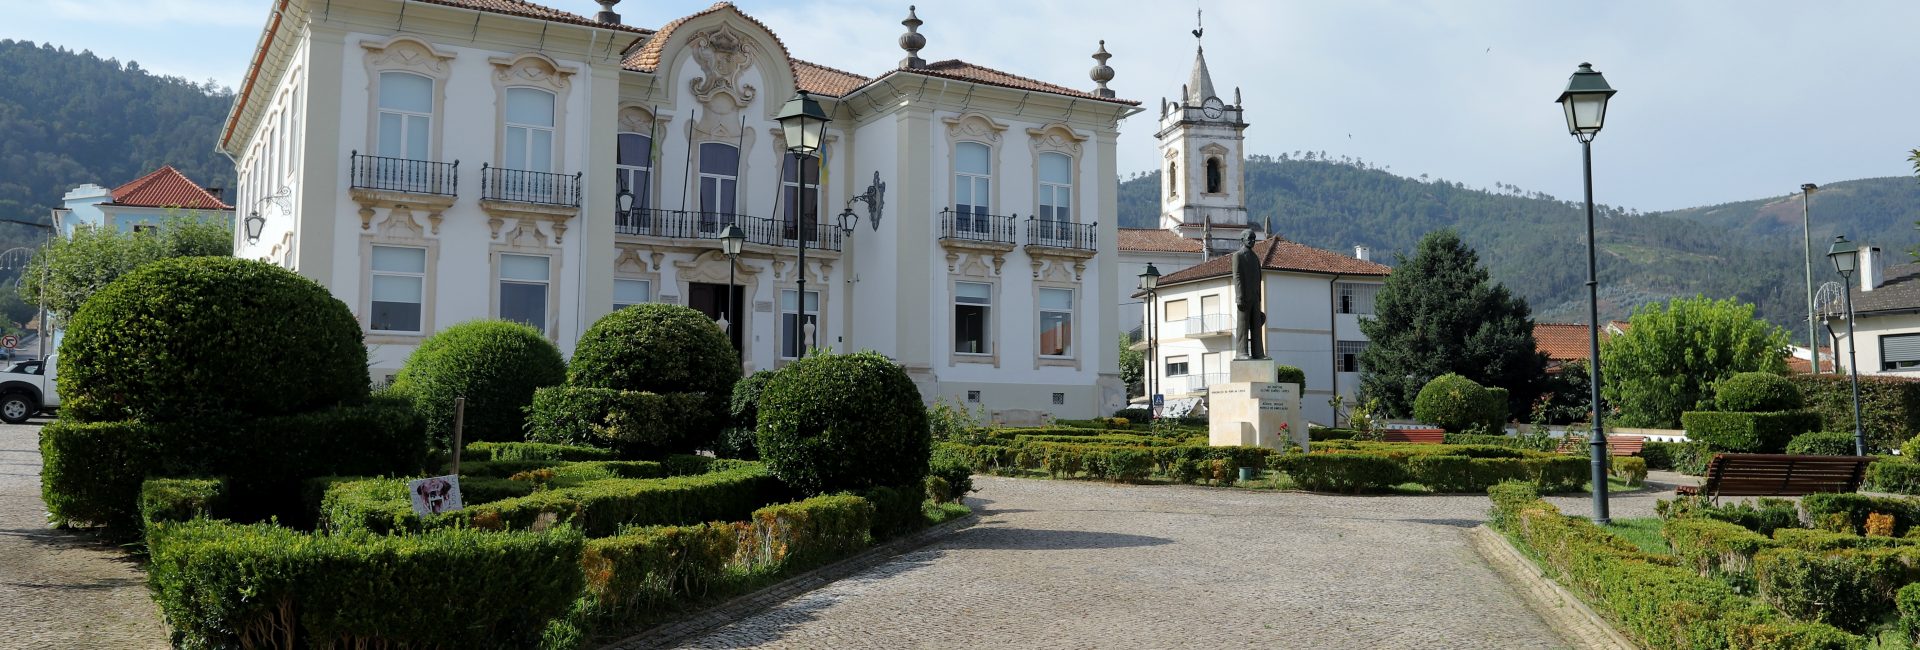 Câmara Municipal da Lousã toma medidas legais contra cortes abusivos na proximidade da Aldeia do Casal Novo